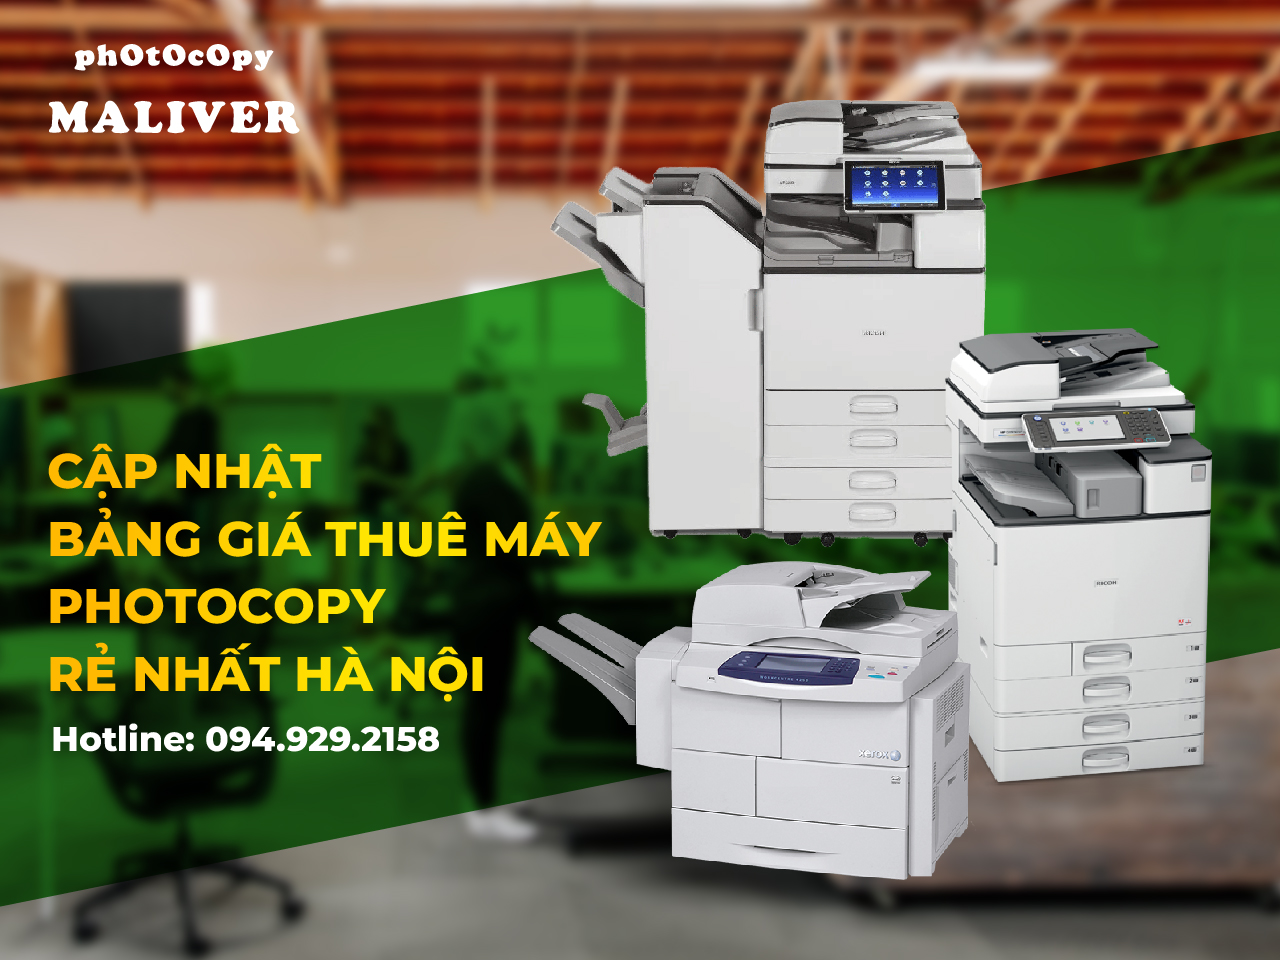 Cập nhật bảng giá thuê máy photocopy rẻ nhất Hà Nội